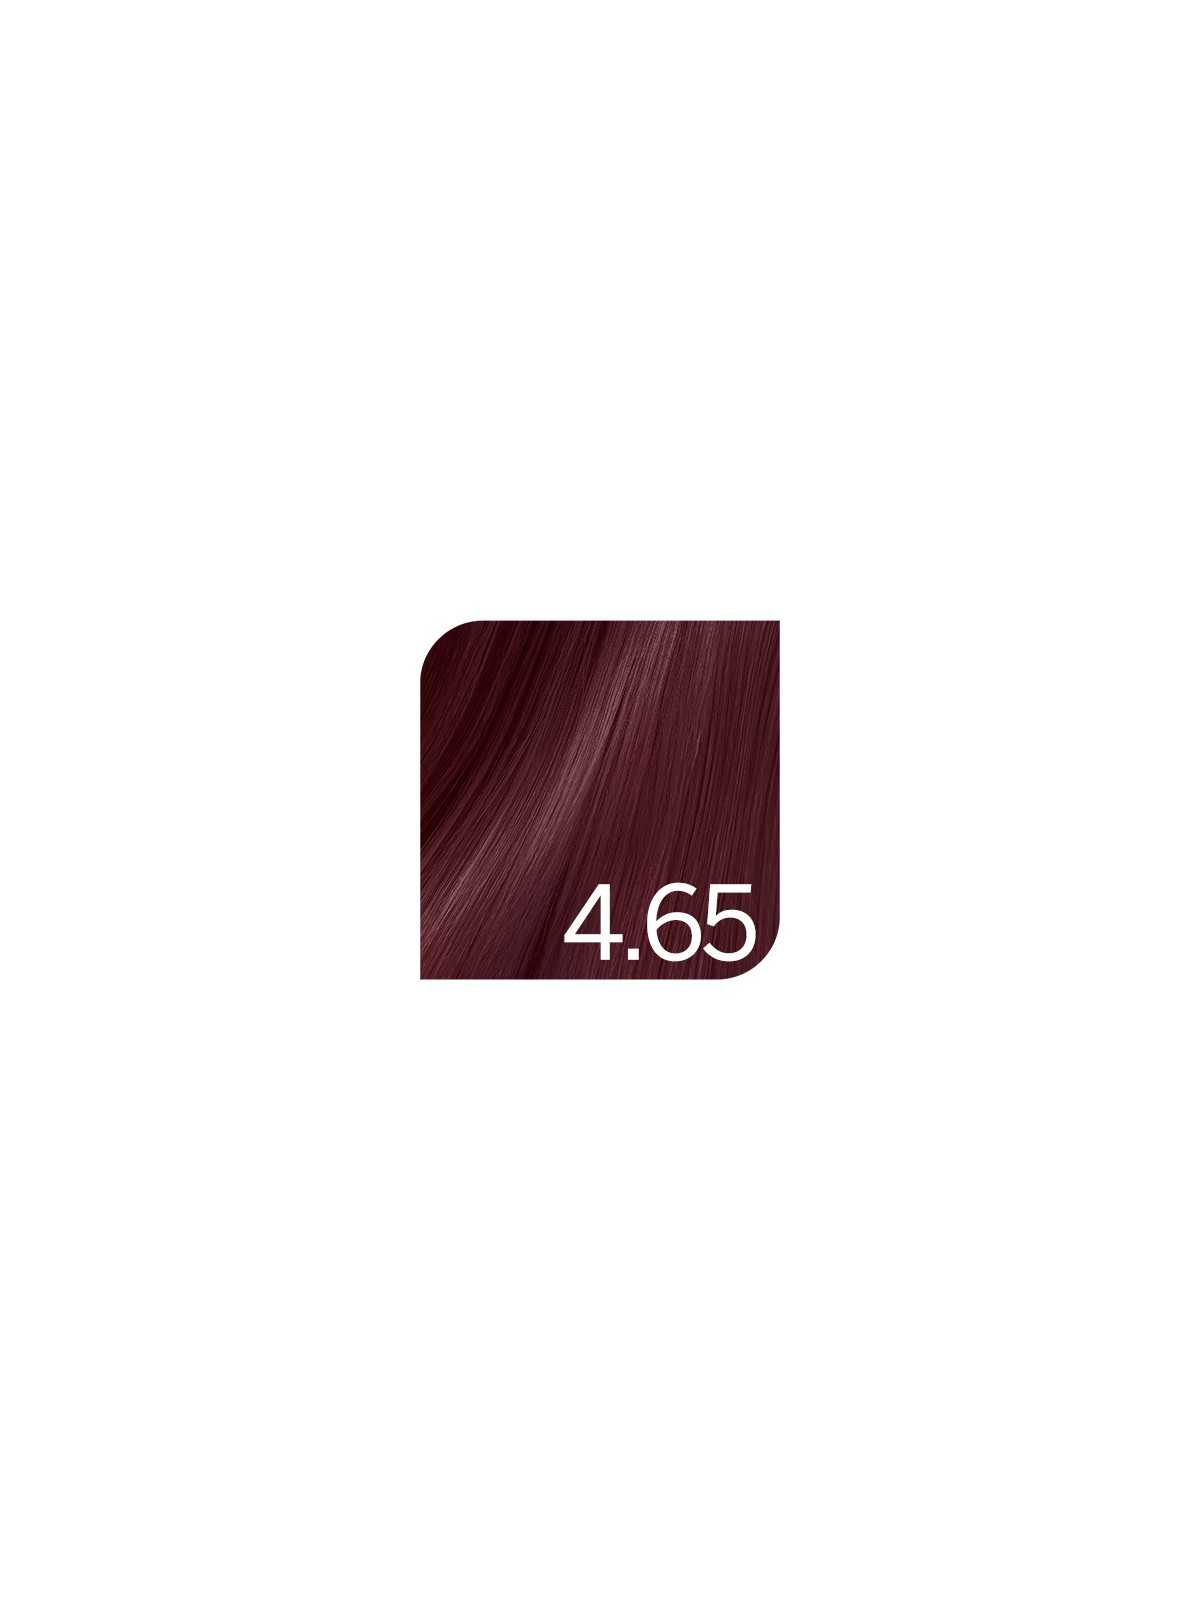 Comprar Revlon Tinte Revlonissimo Colorsmetique 4.65 Castaño medio rojo caoba 60ml en Tintes con amoniaco por sólo 14,91 € o un precio específico de 8,95 € en Thalie Care